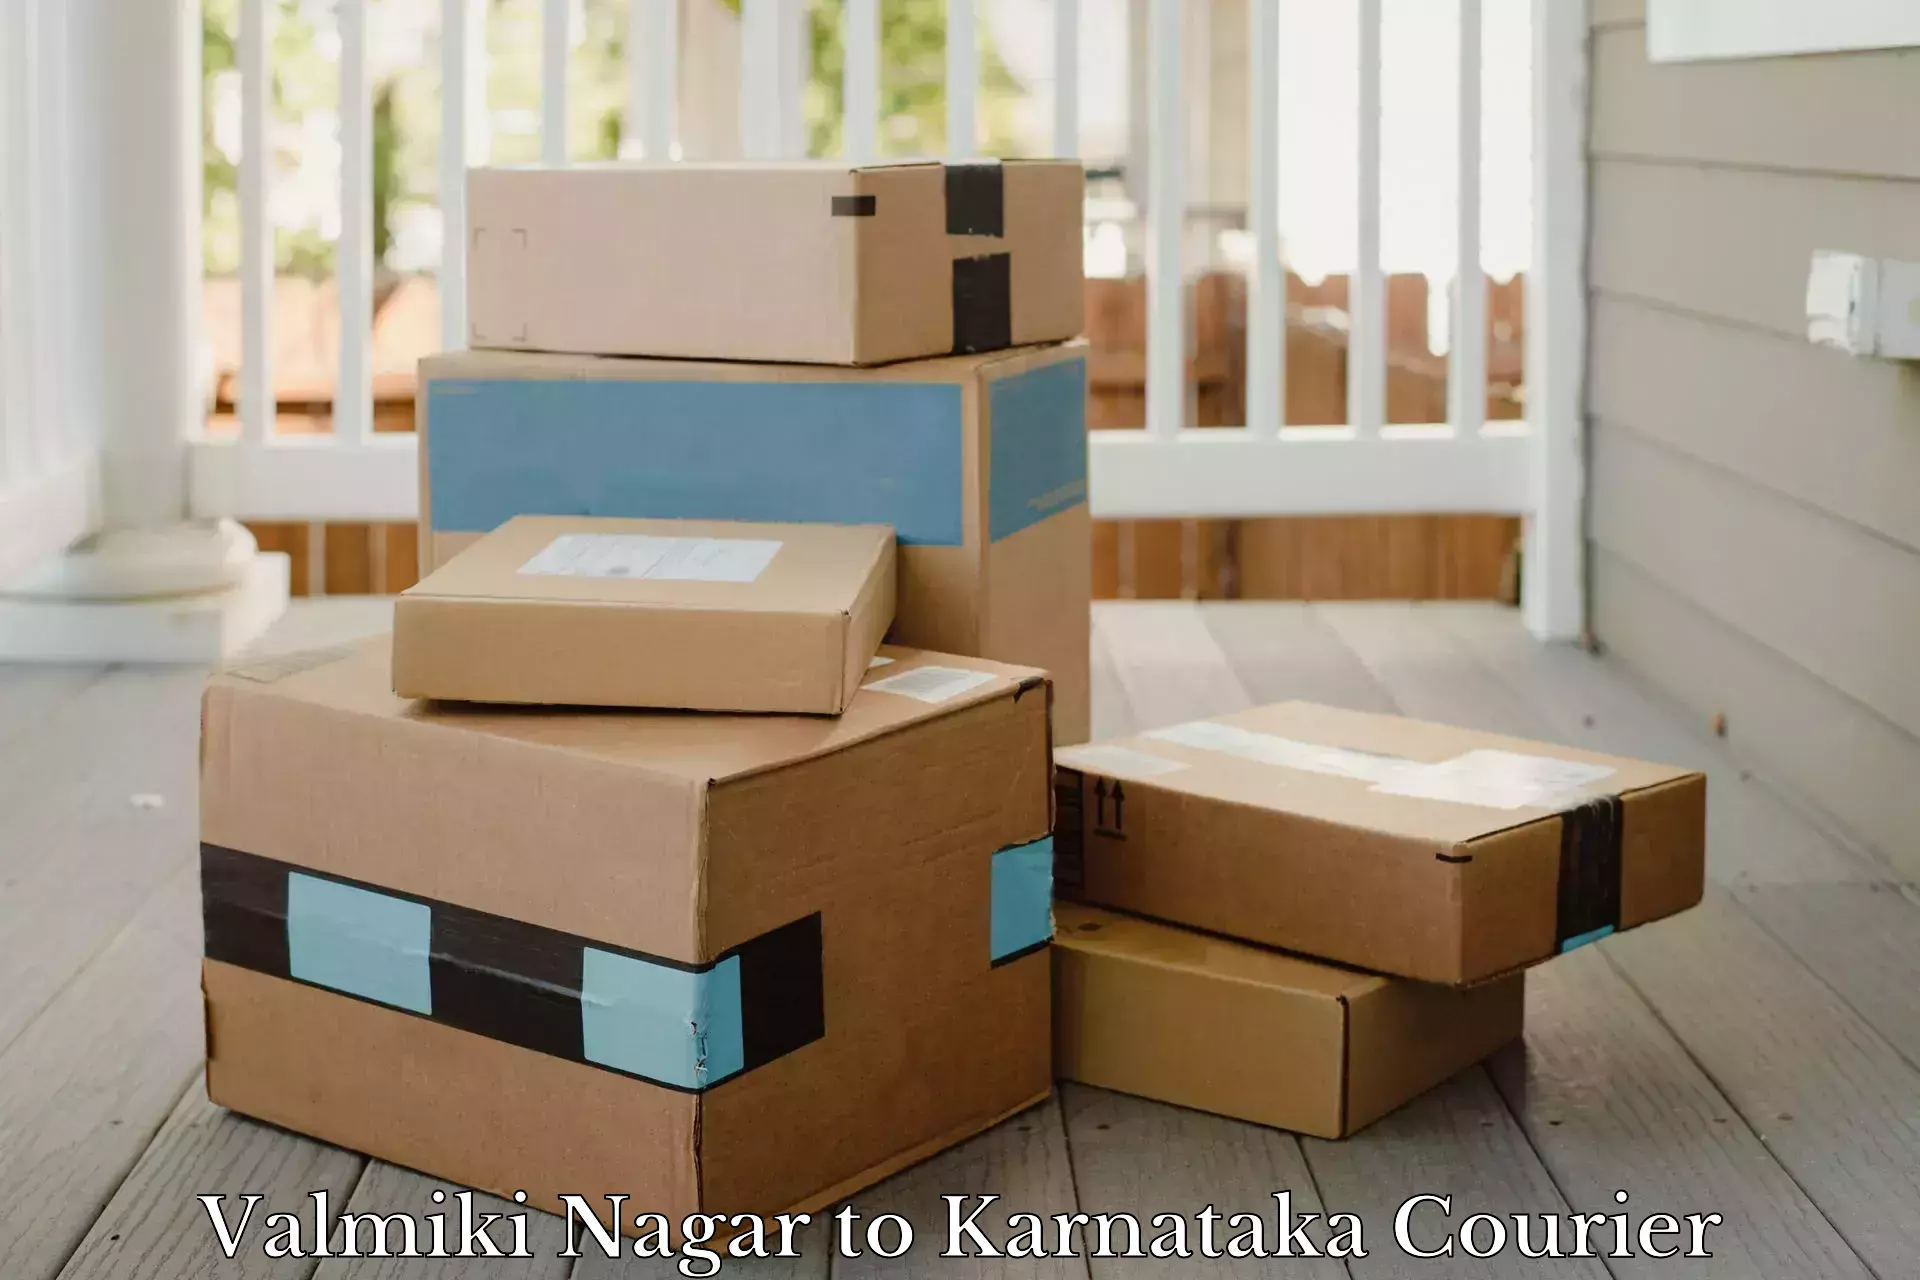 State-of-the-art courier technology Valmiki Nagar to Kora Tumkur